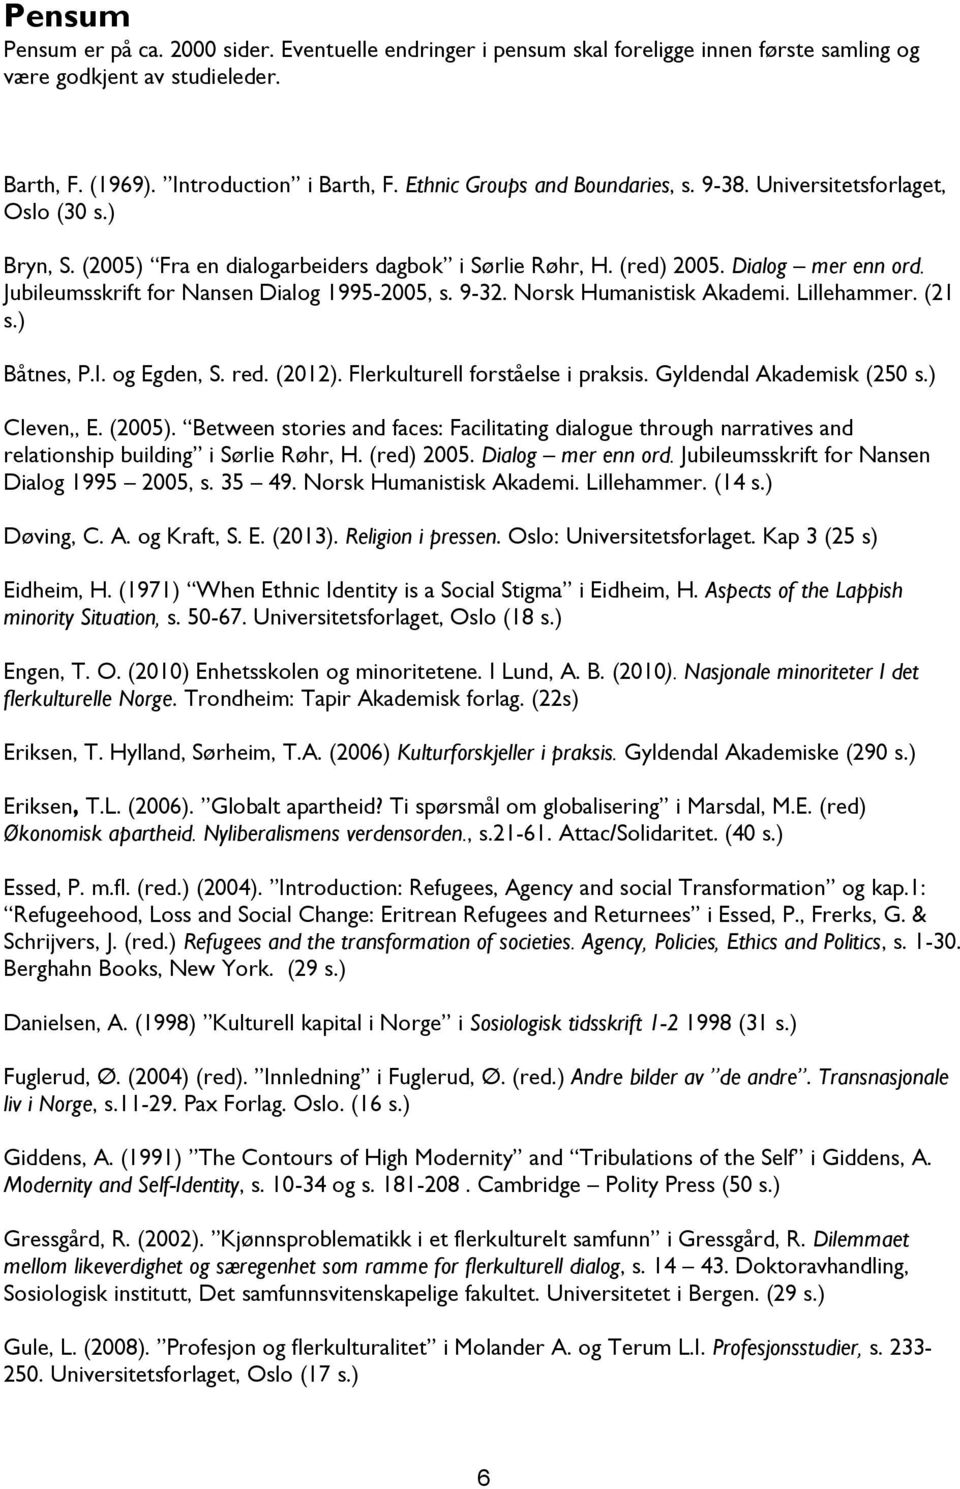 Jubileumsskrift for Nansen Dialog 1995-2005, s. 9-32. Norsk Humanistisk Akademi. Lillehammer. (21 s.) Båtnes, P.I. og Egden, S. red. (2012). Flerkulturell forståelse i praksis.